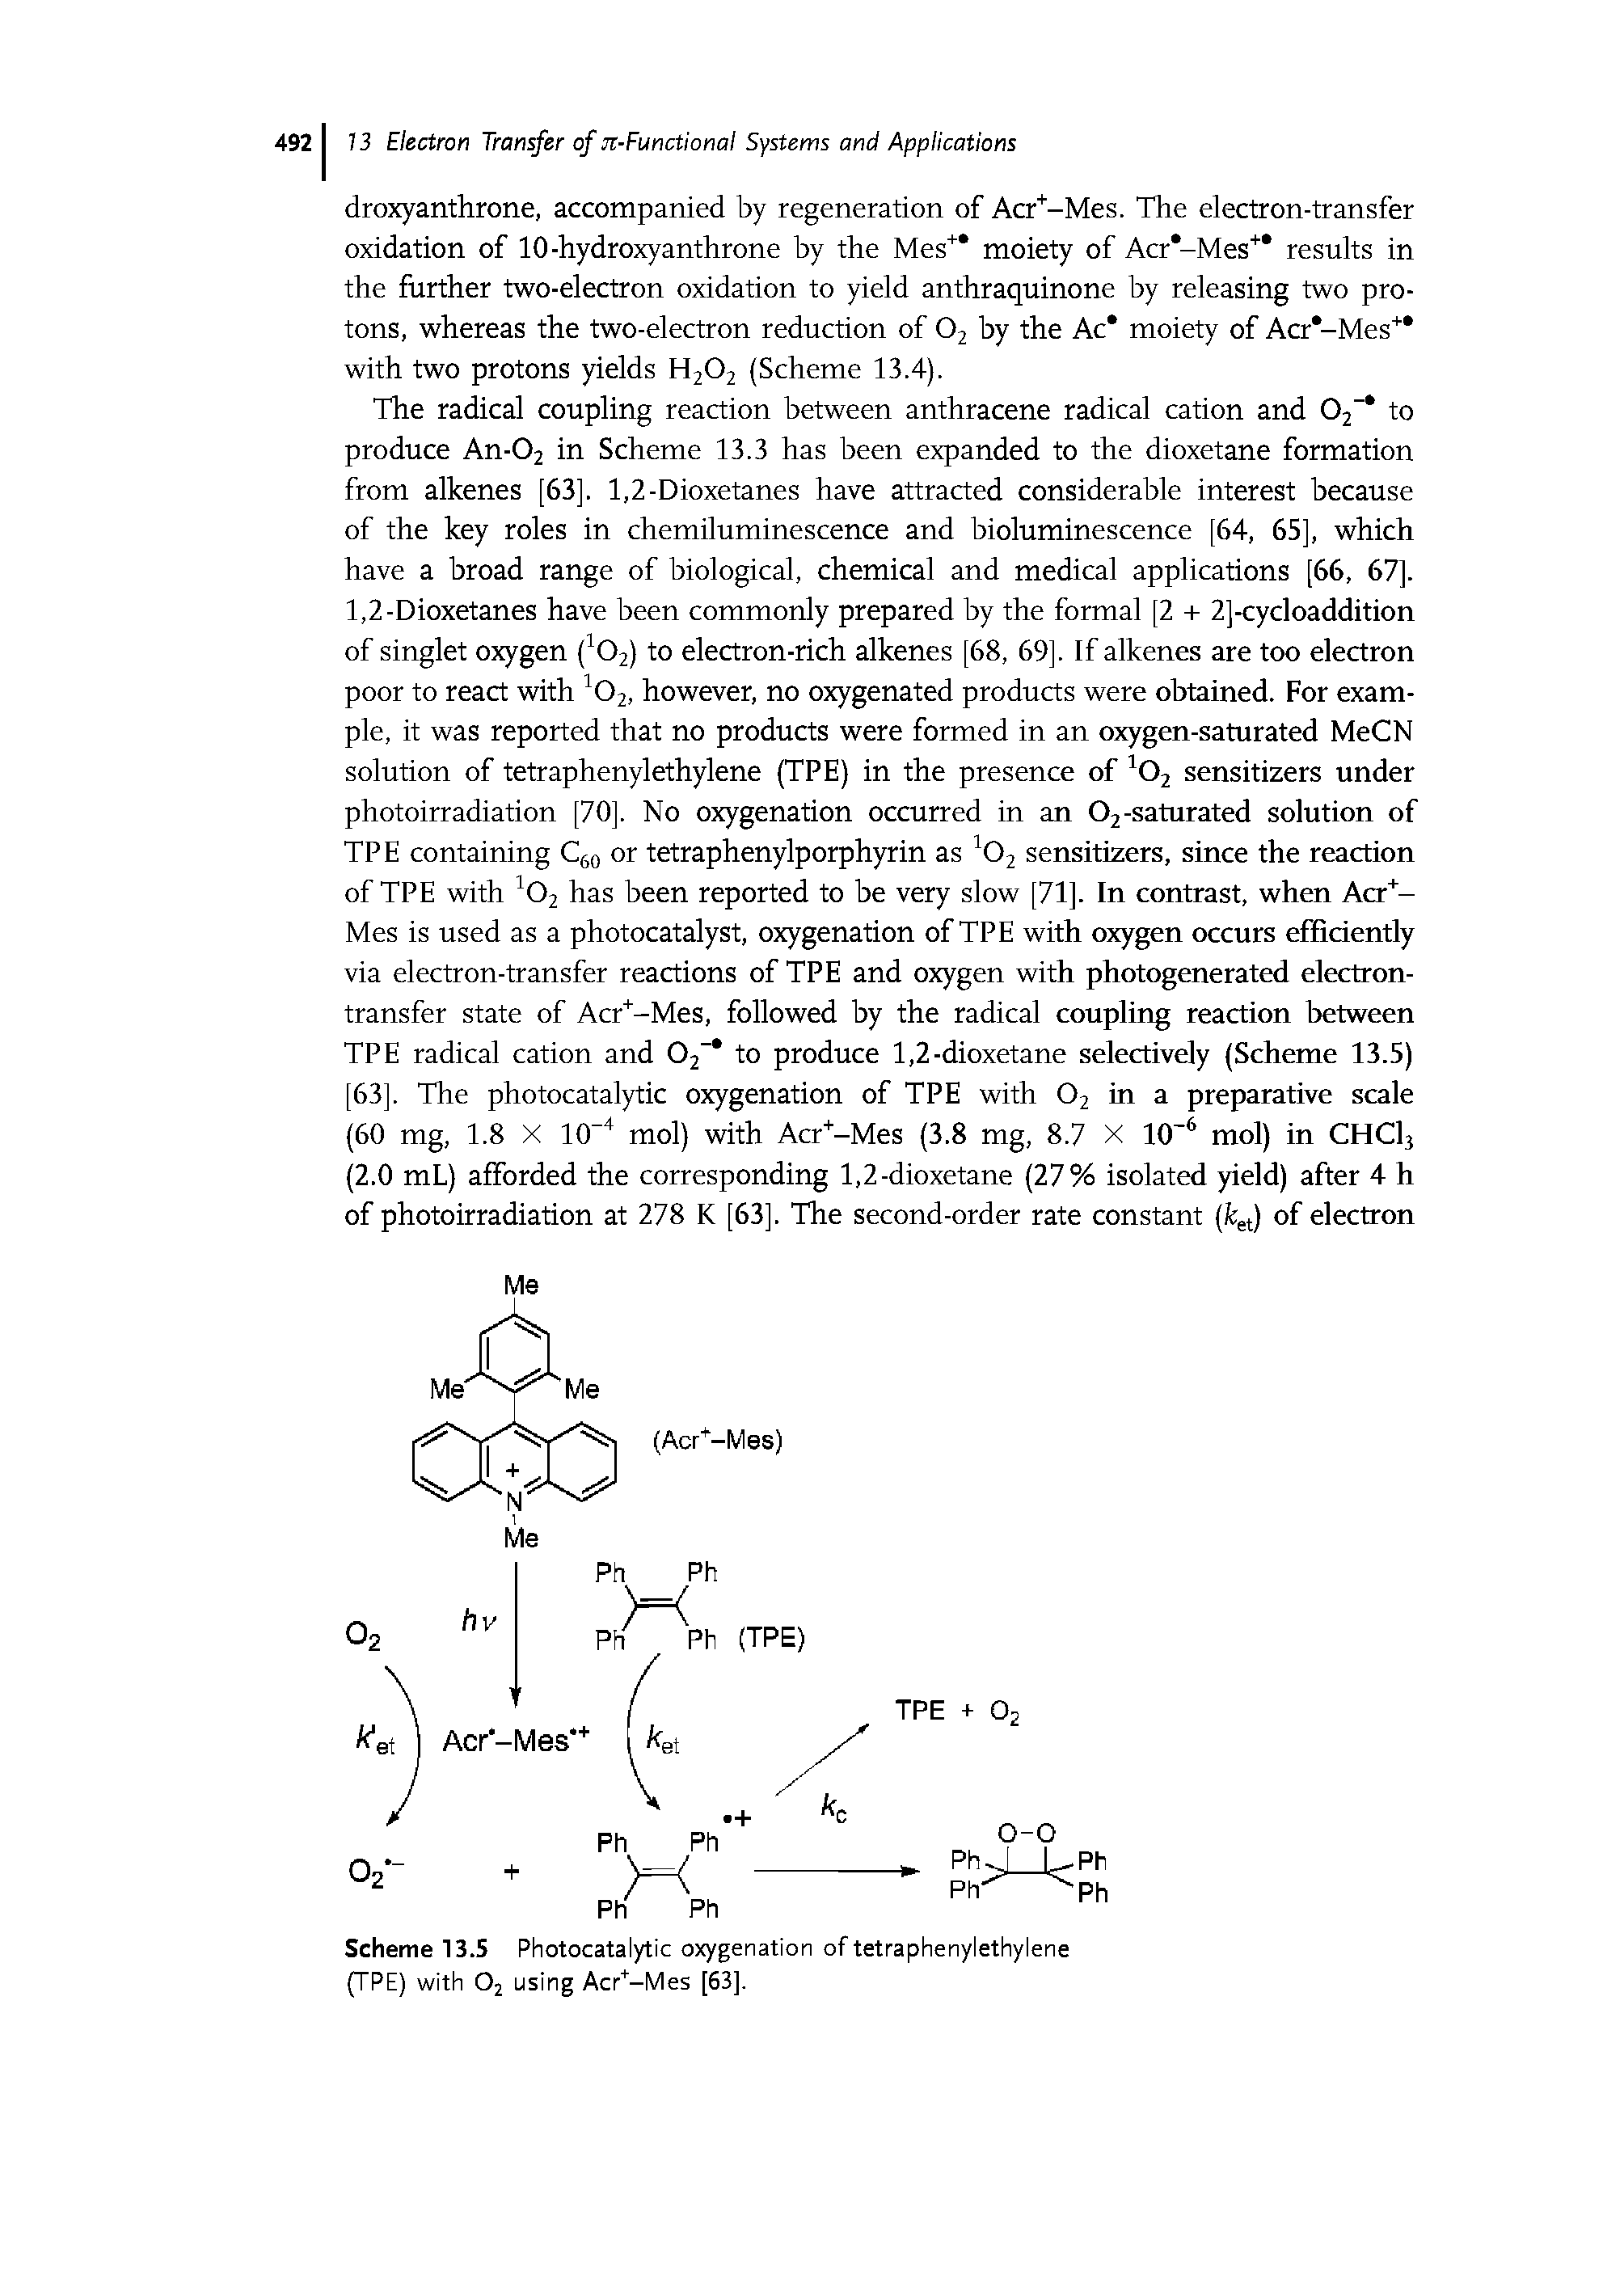 Scheme 13.5 Photocatalytic oxygenation of tetraphenylethylene (TPE) with 02 using Acr+-Mes [63],...